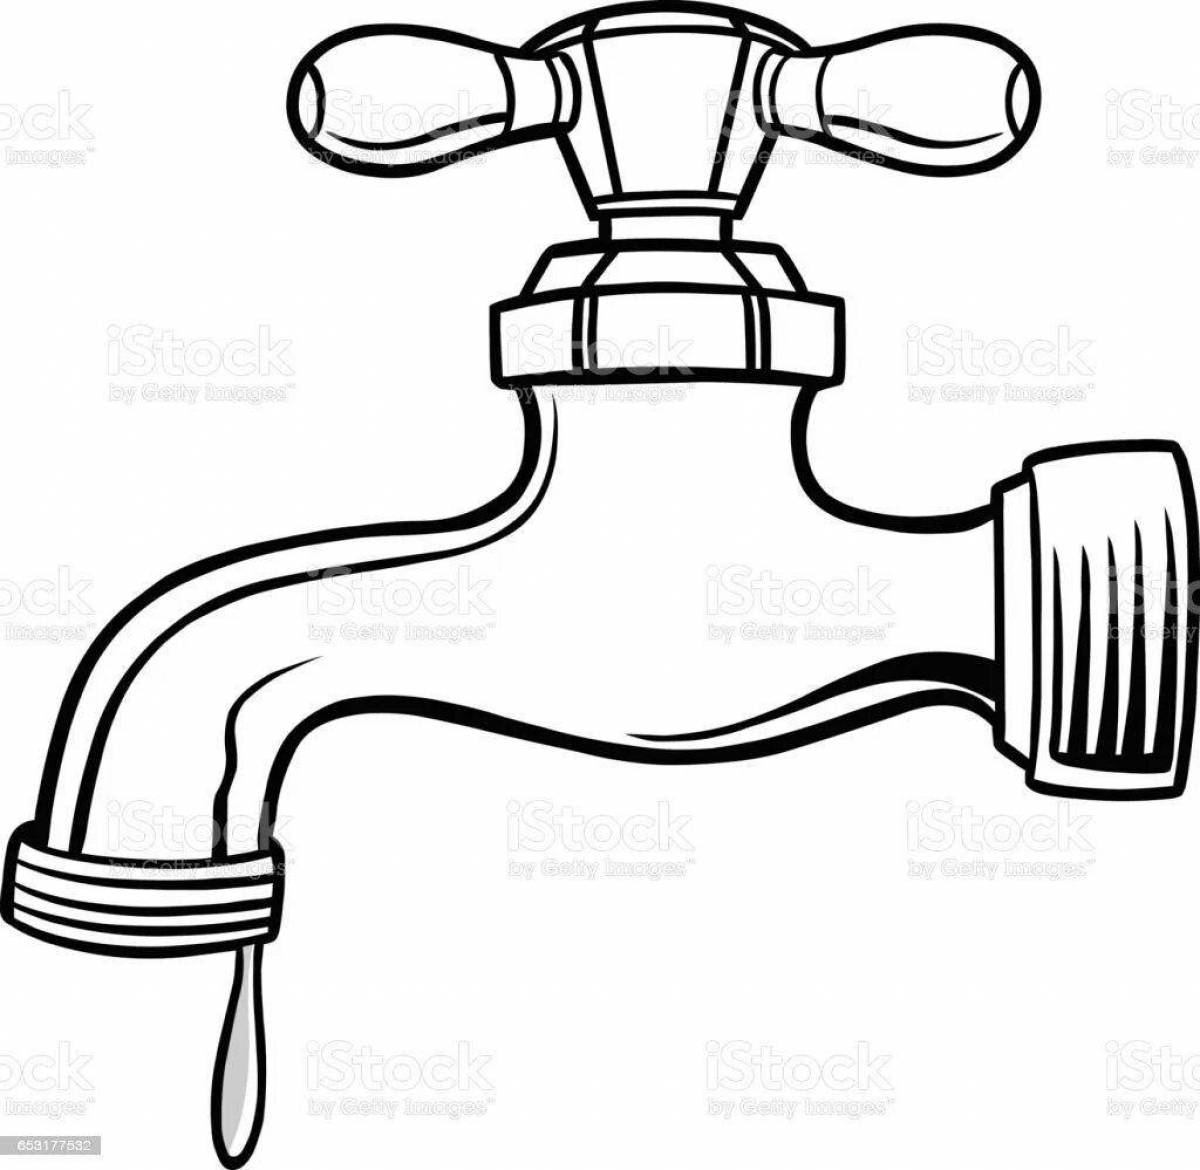 Children's water faucet #20